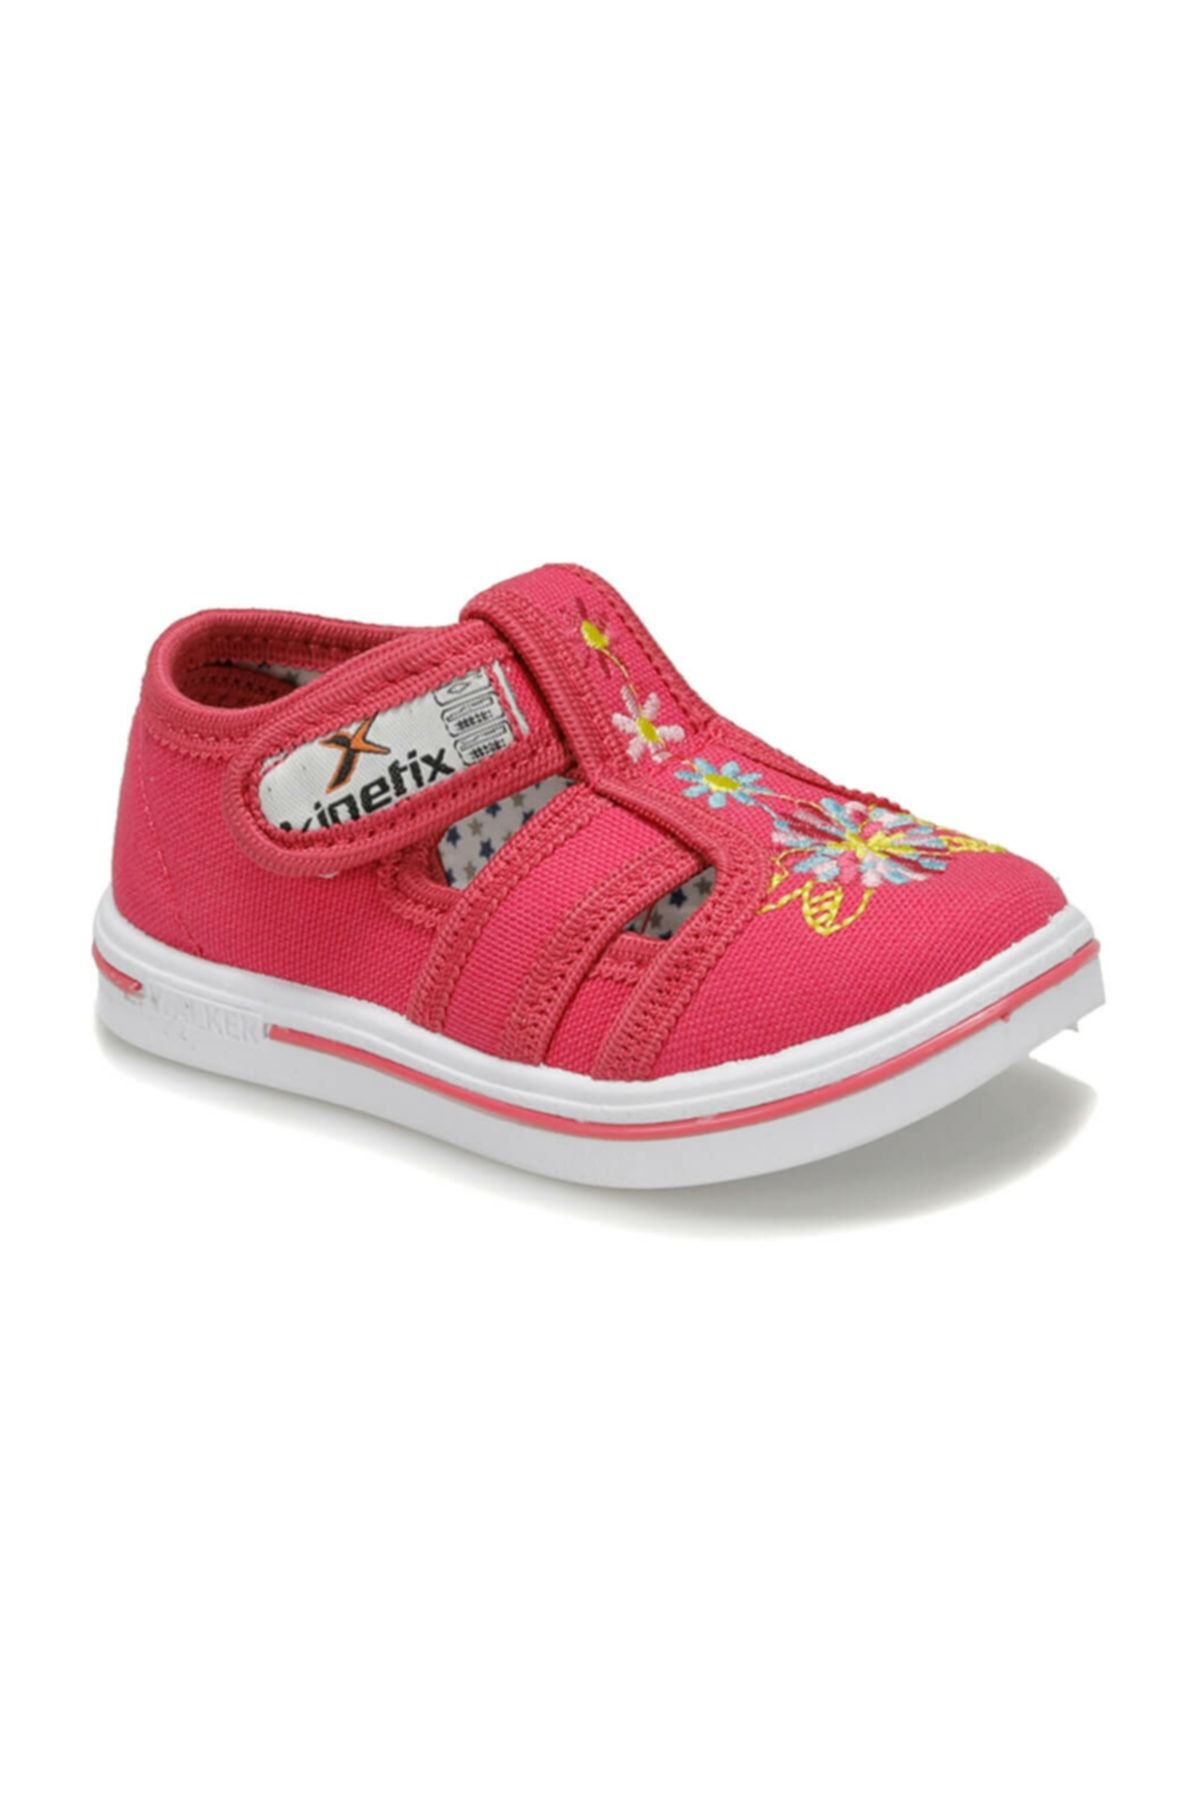 Kinetix Zyra Fuşya Kız Çocuk Sneaker Ayakkabı 100367493